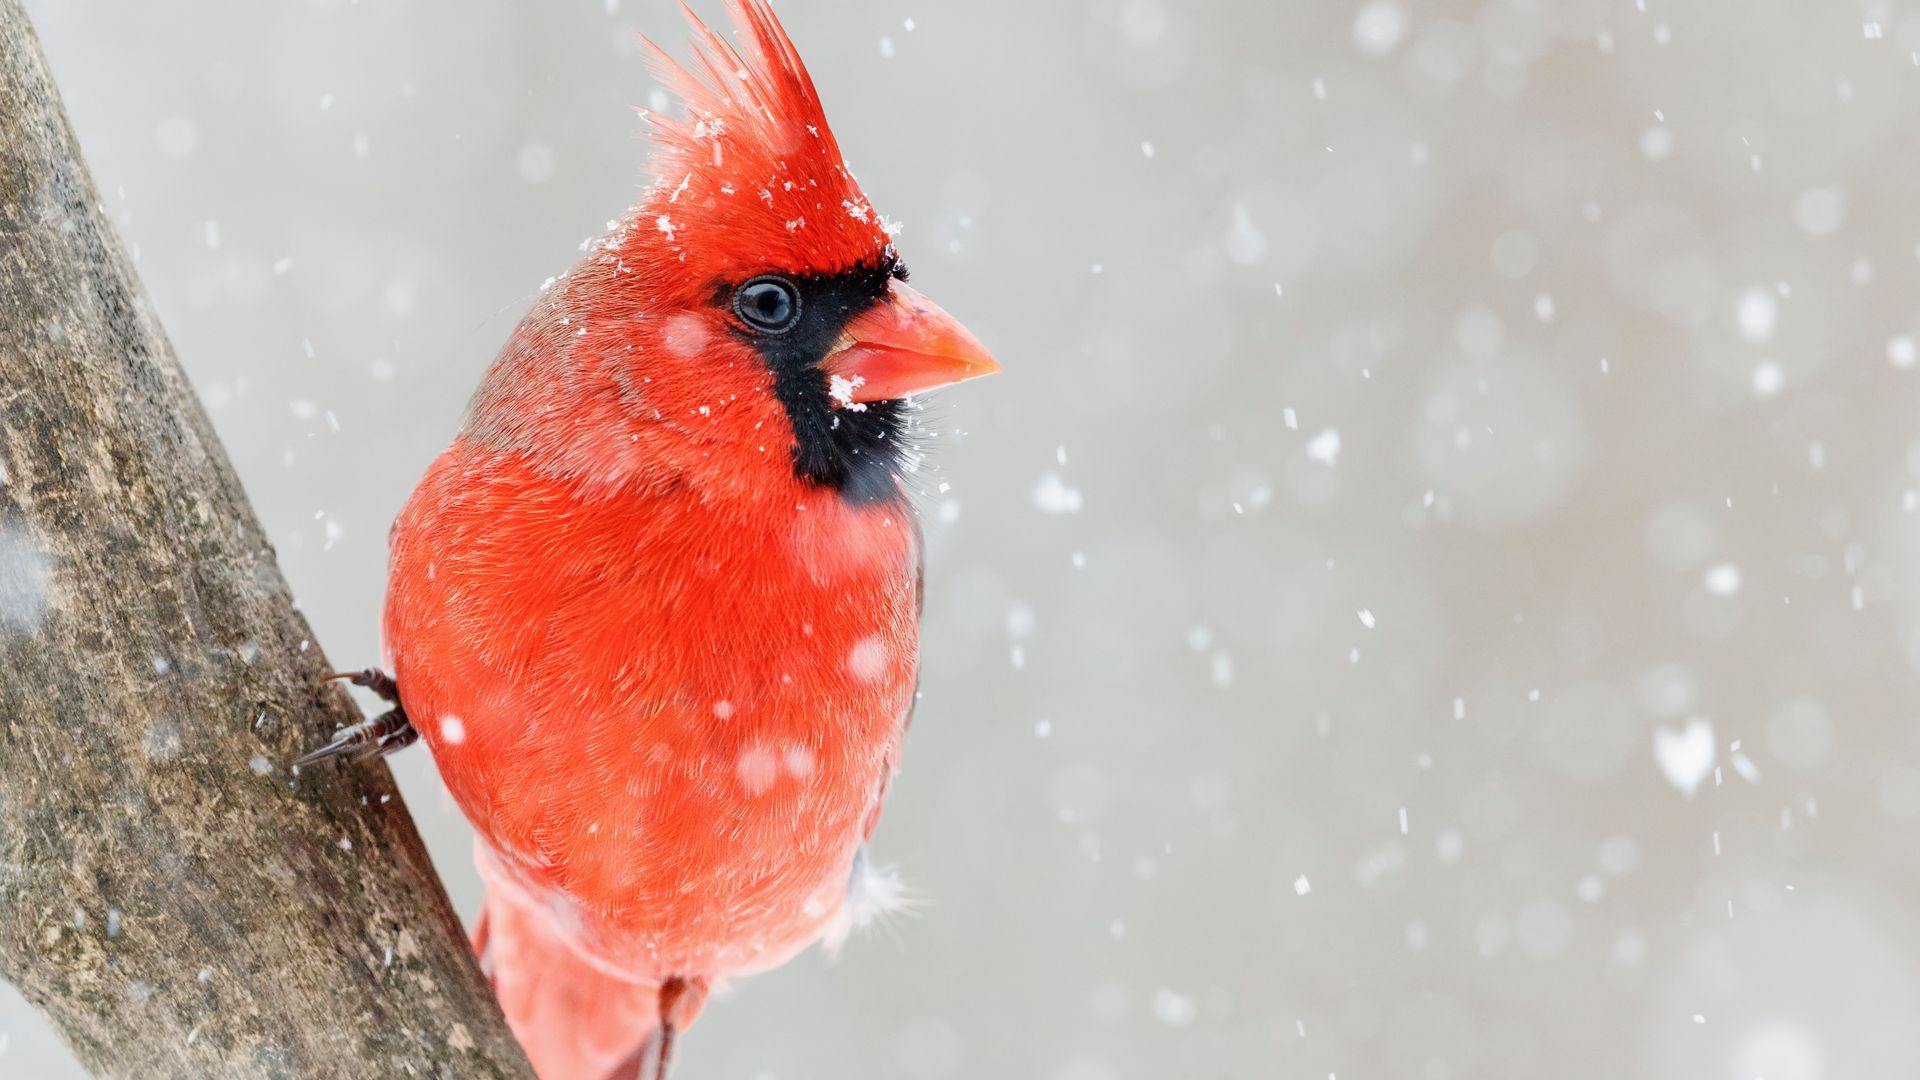 фото красного снега